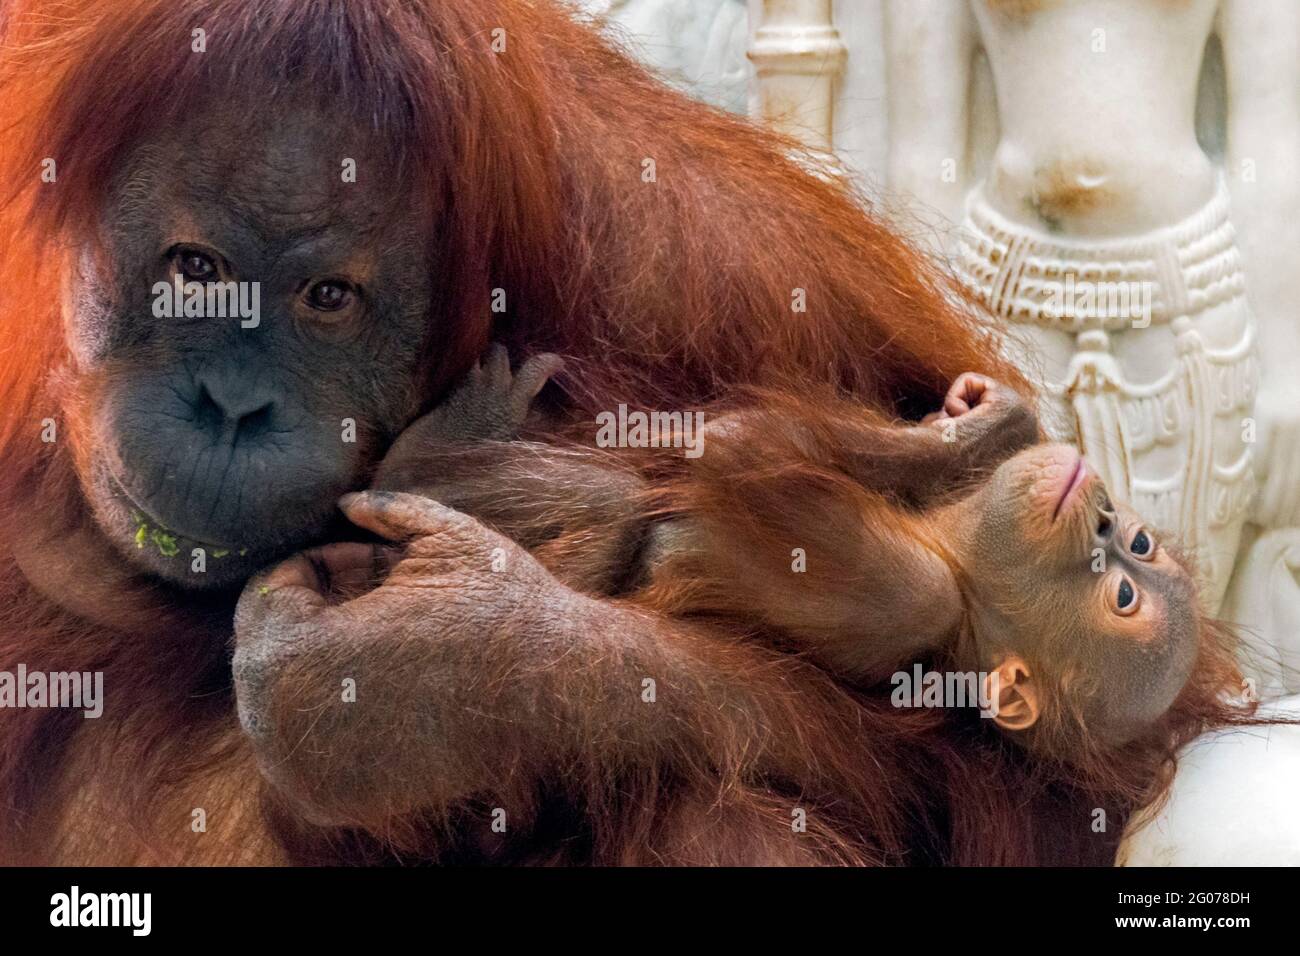 Sumatran orangutan / orang-utan (Pongo abelii) femelle tenant un bébé de six mois dans le zoo, originaire de l'île indonésienne de Sumatra Banque D'Images